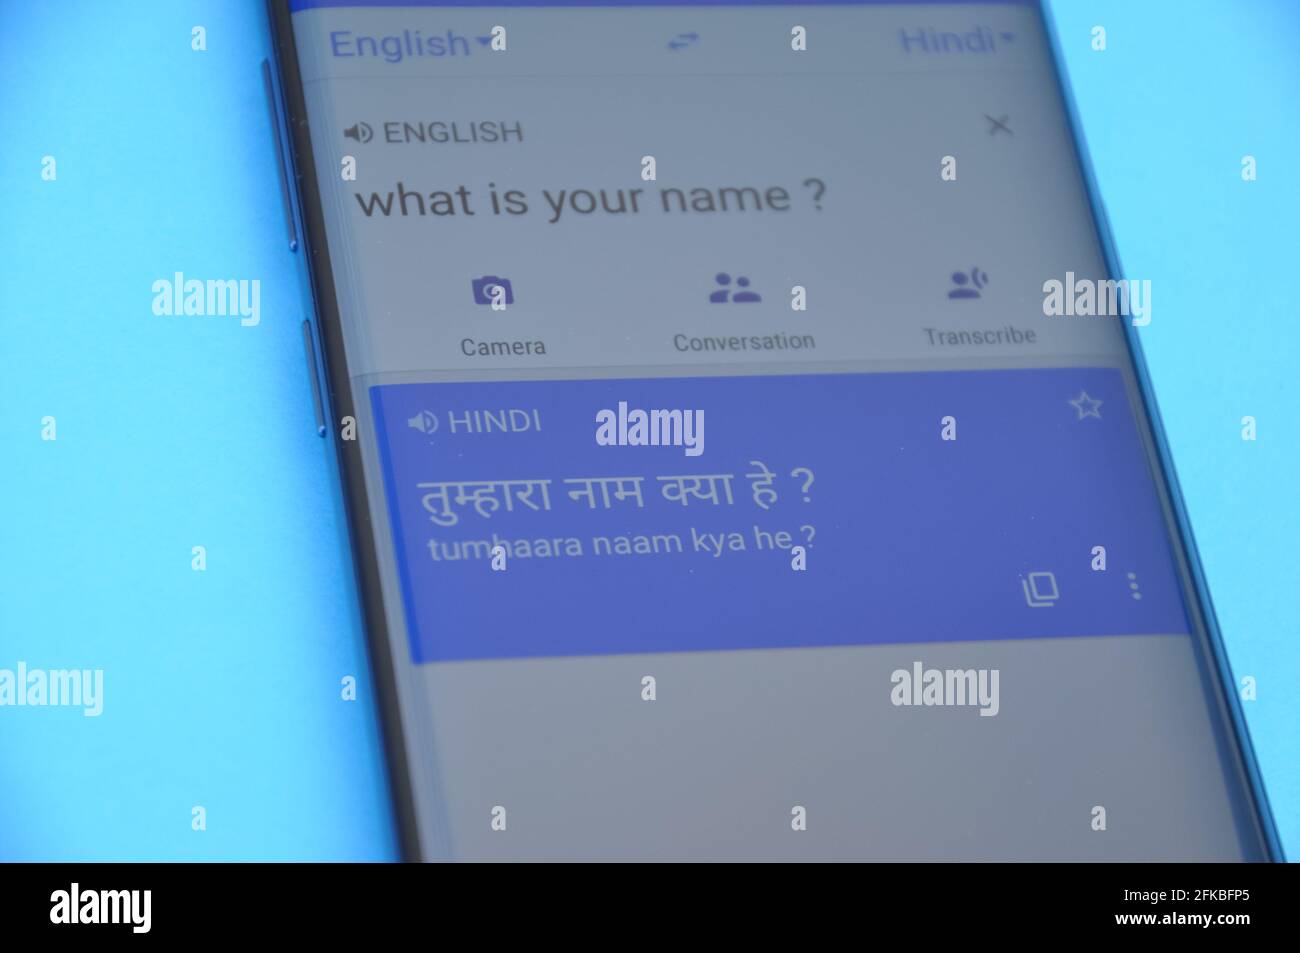 Mandi, Himachal Pradesh, Inde - 03 05 2021: Traduire 'quel est votre nom' anglais en langue hindi sur Google traduire affichage sur téléphone mobile isolé sur fond bleu. Banque D'Images